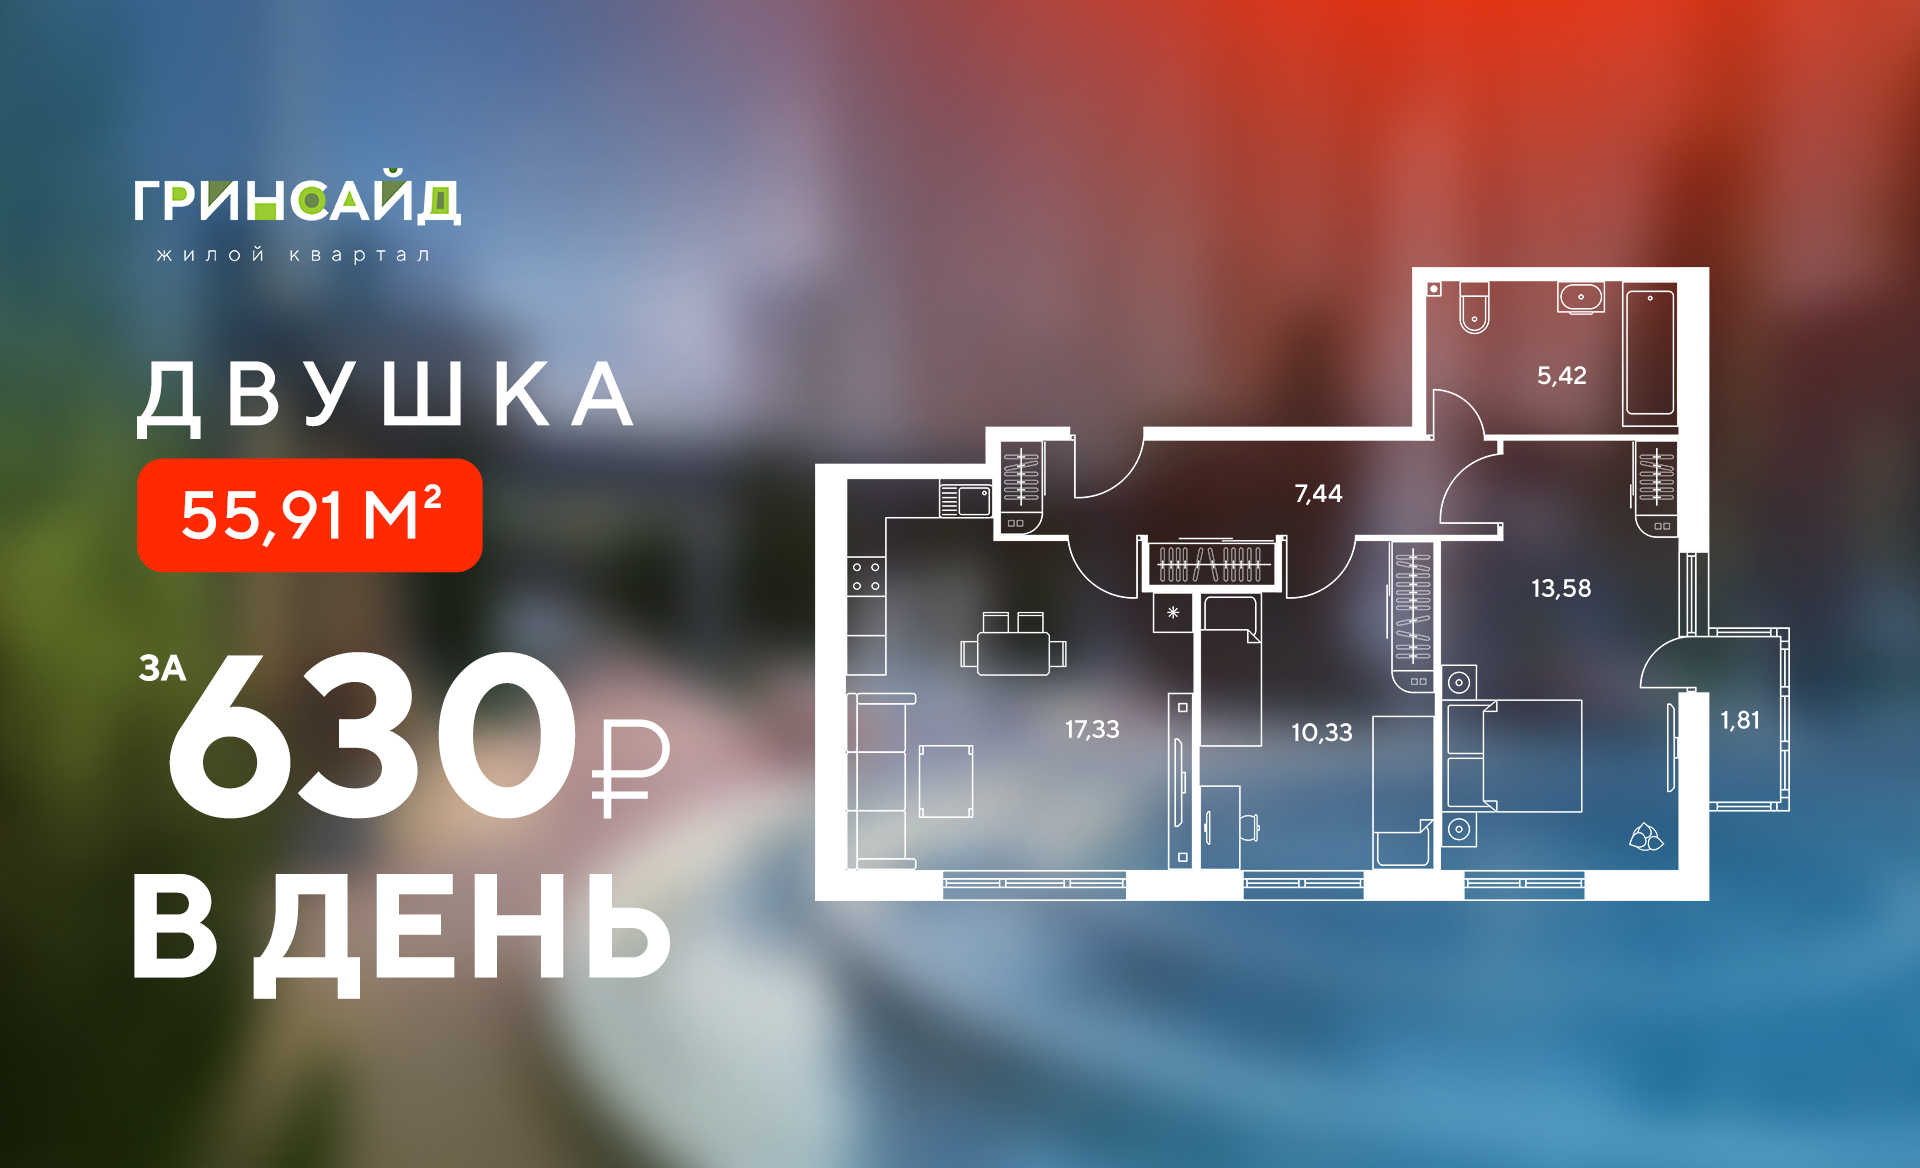 Двухкомнатная квартира в центре за 630 рублей в день!